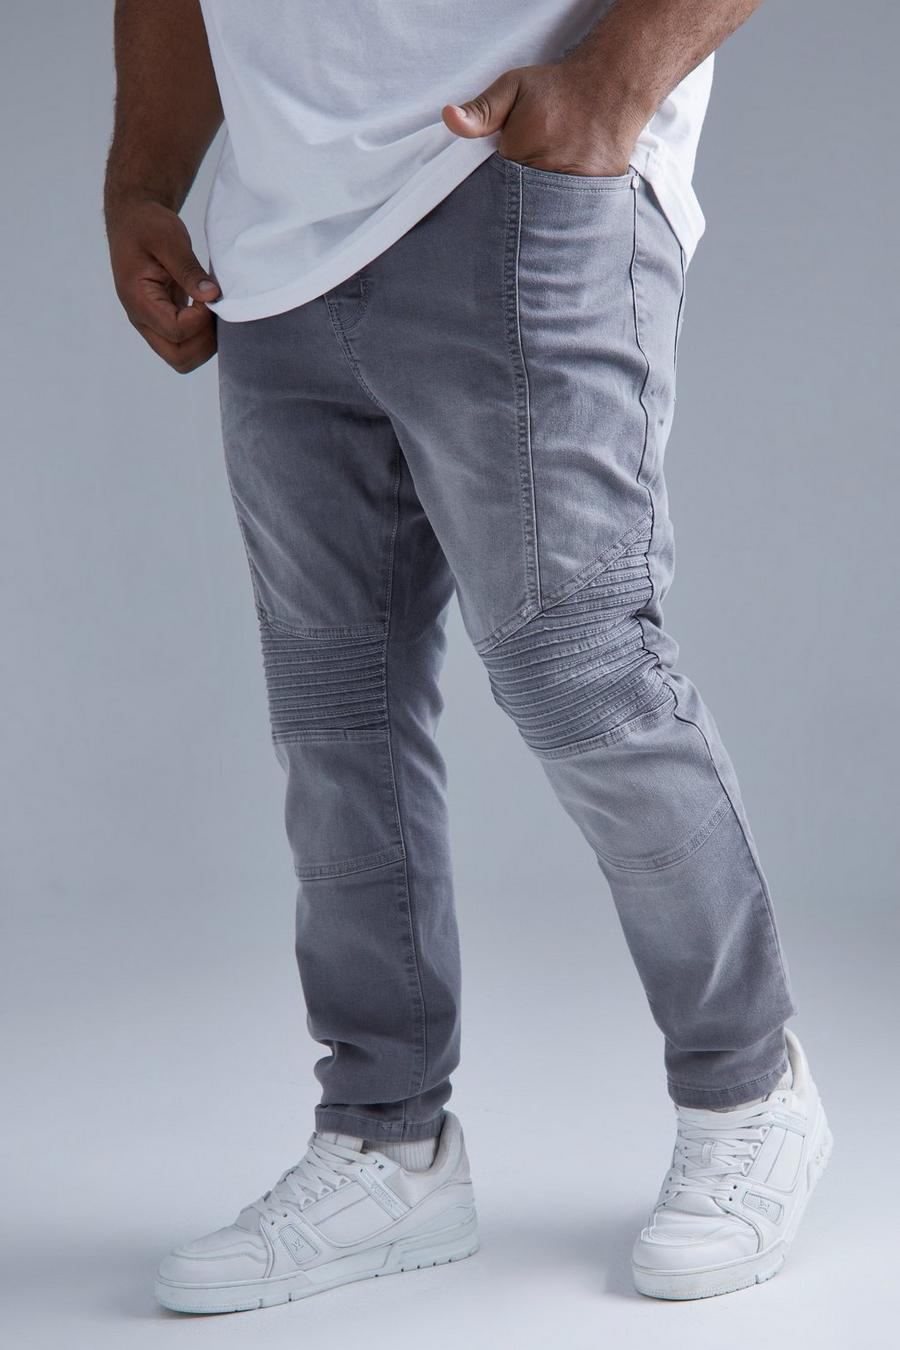 אפור ביניים grigio ג'ינס סקיני נמתח בסגנון אופנוענים, מידות גדולות